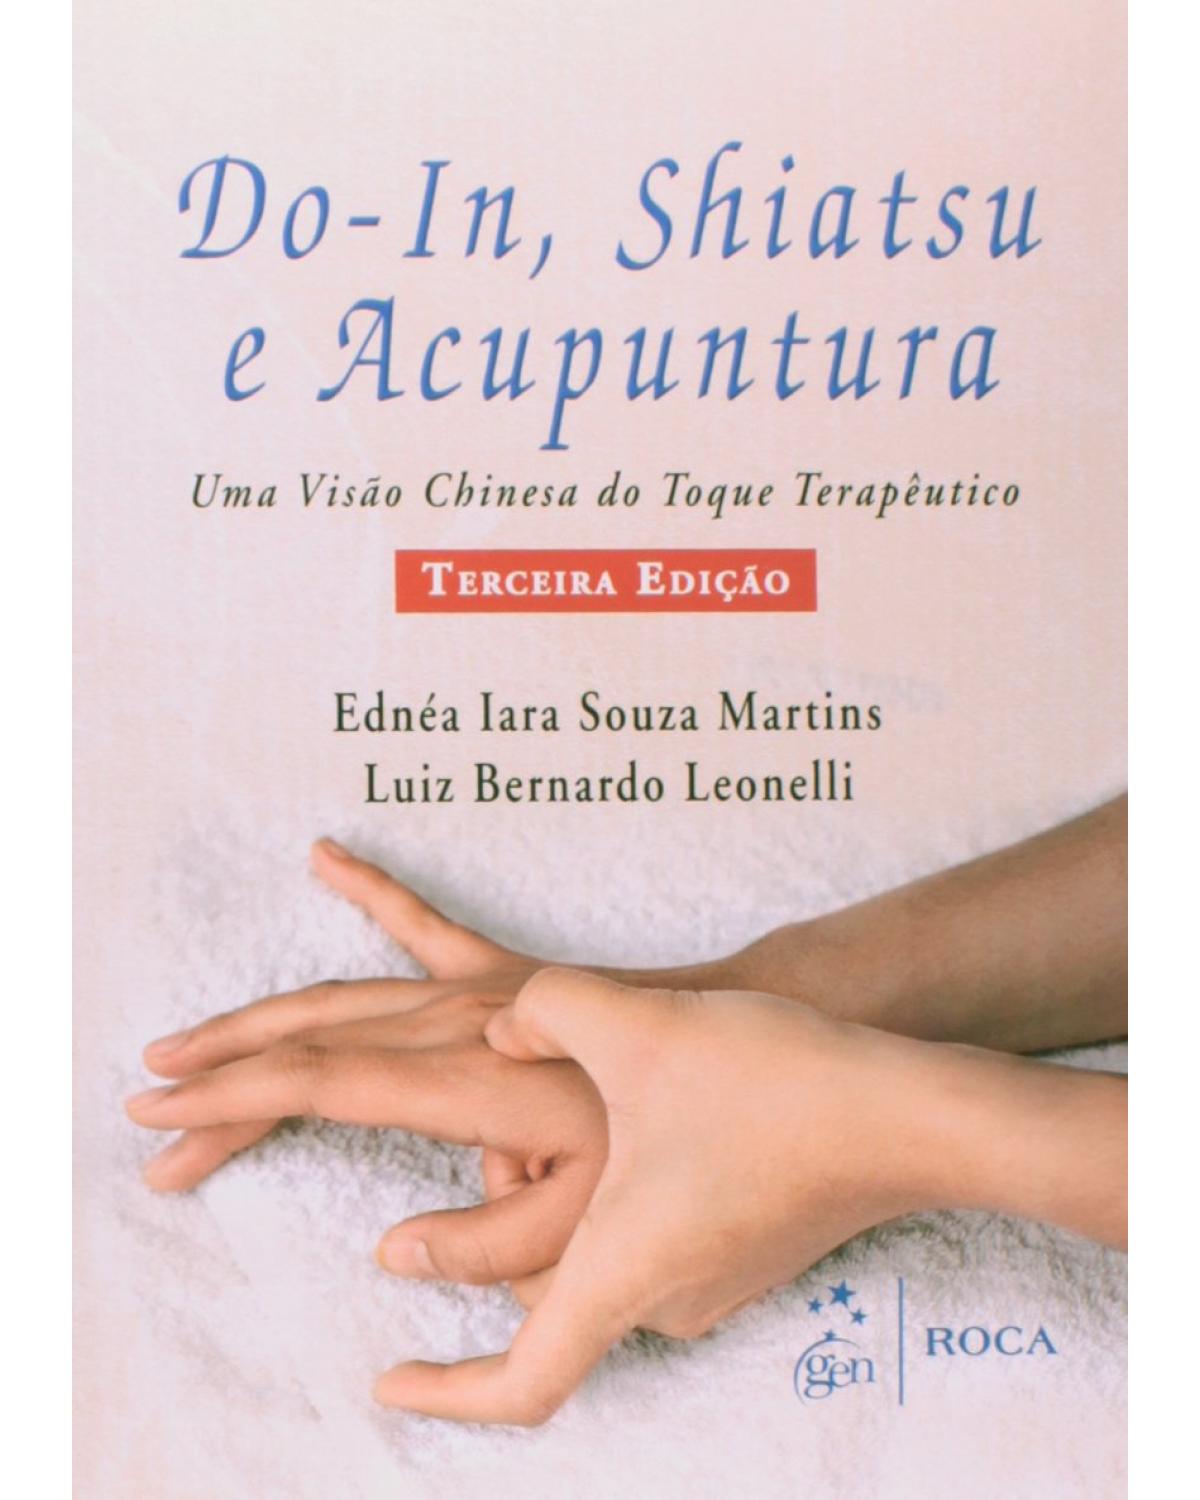 Do-in, shiatsu e acupuntura - Uma visão chinesa do toque terapêutico - 3ª Edição | 2014